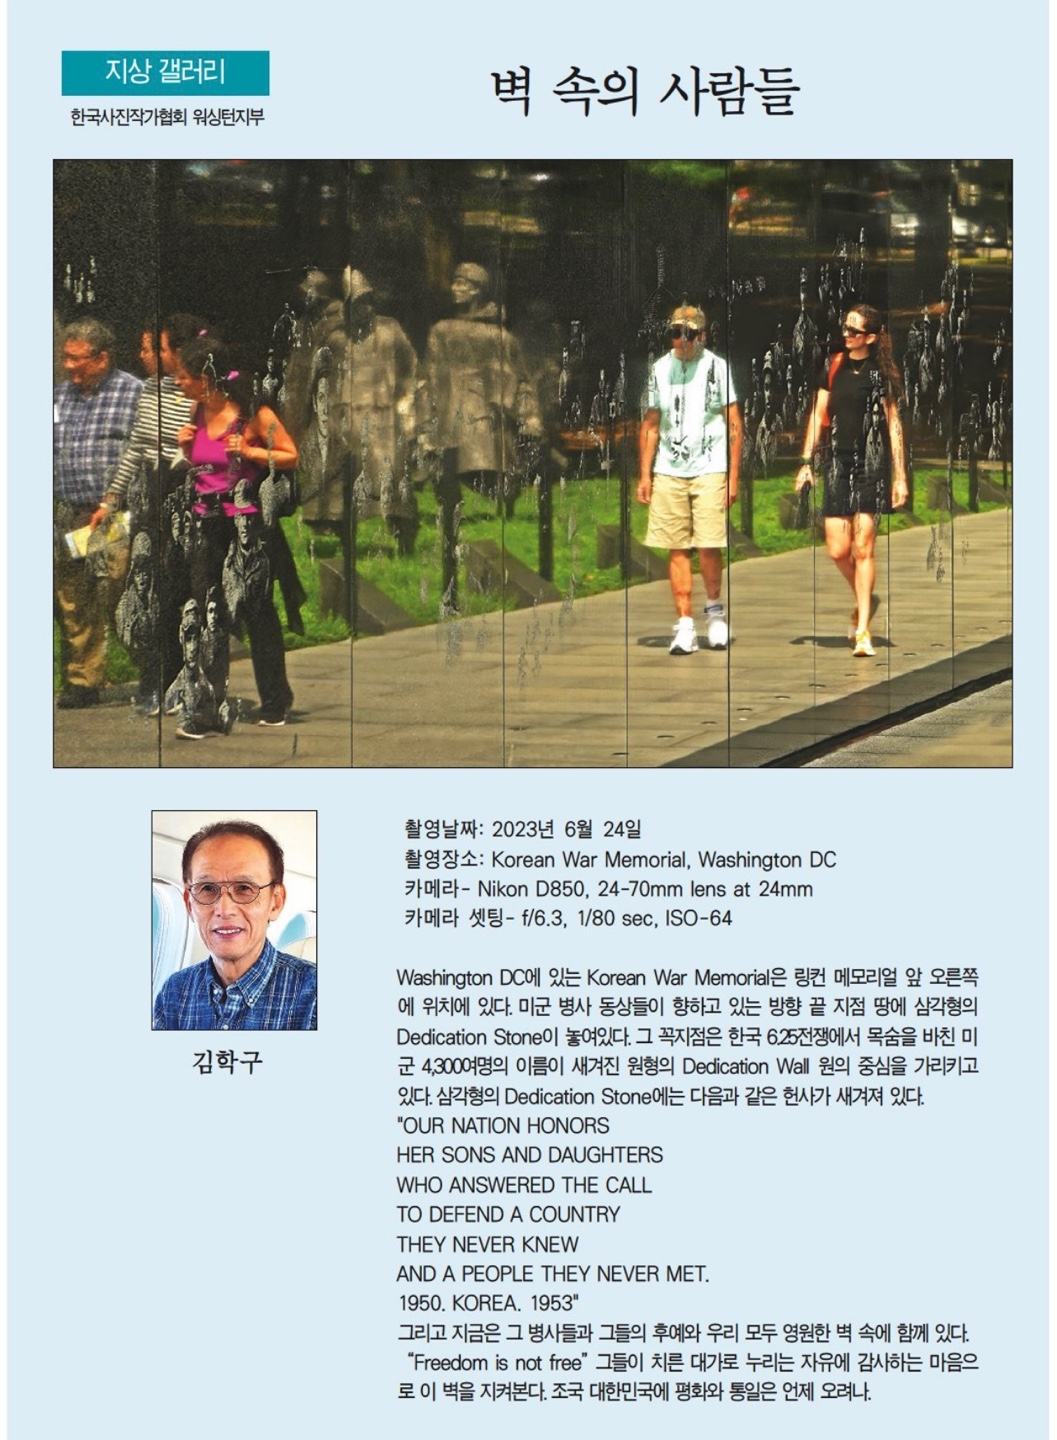 벽 속의 사람들. 김학구. 8월 31일 2023년. 한국일보